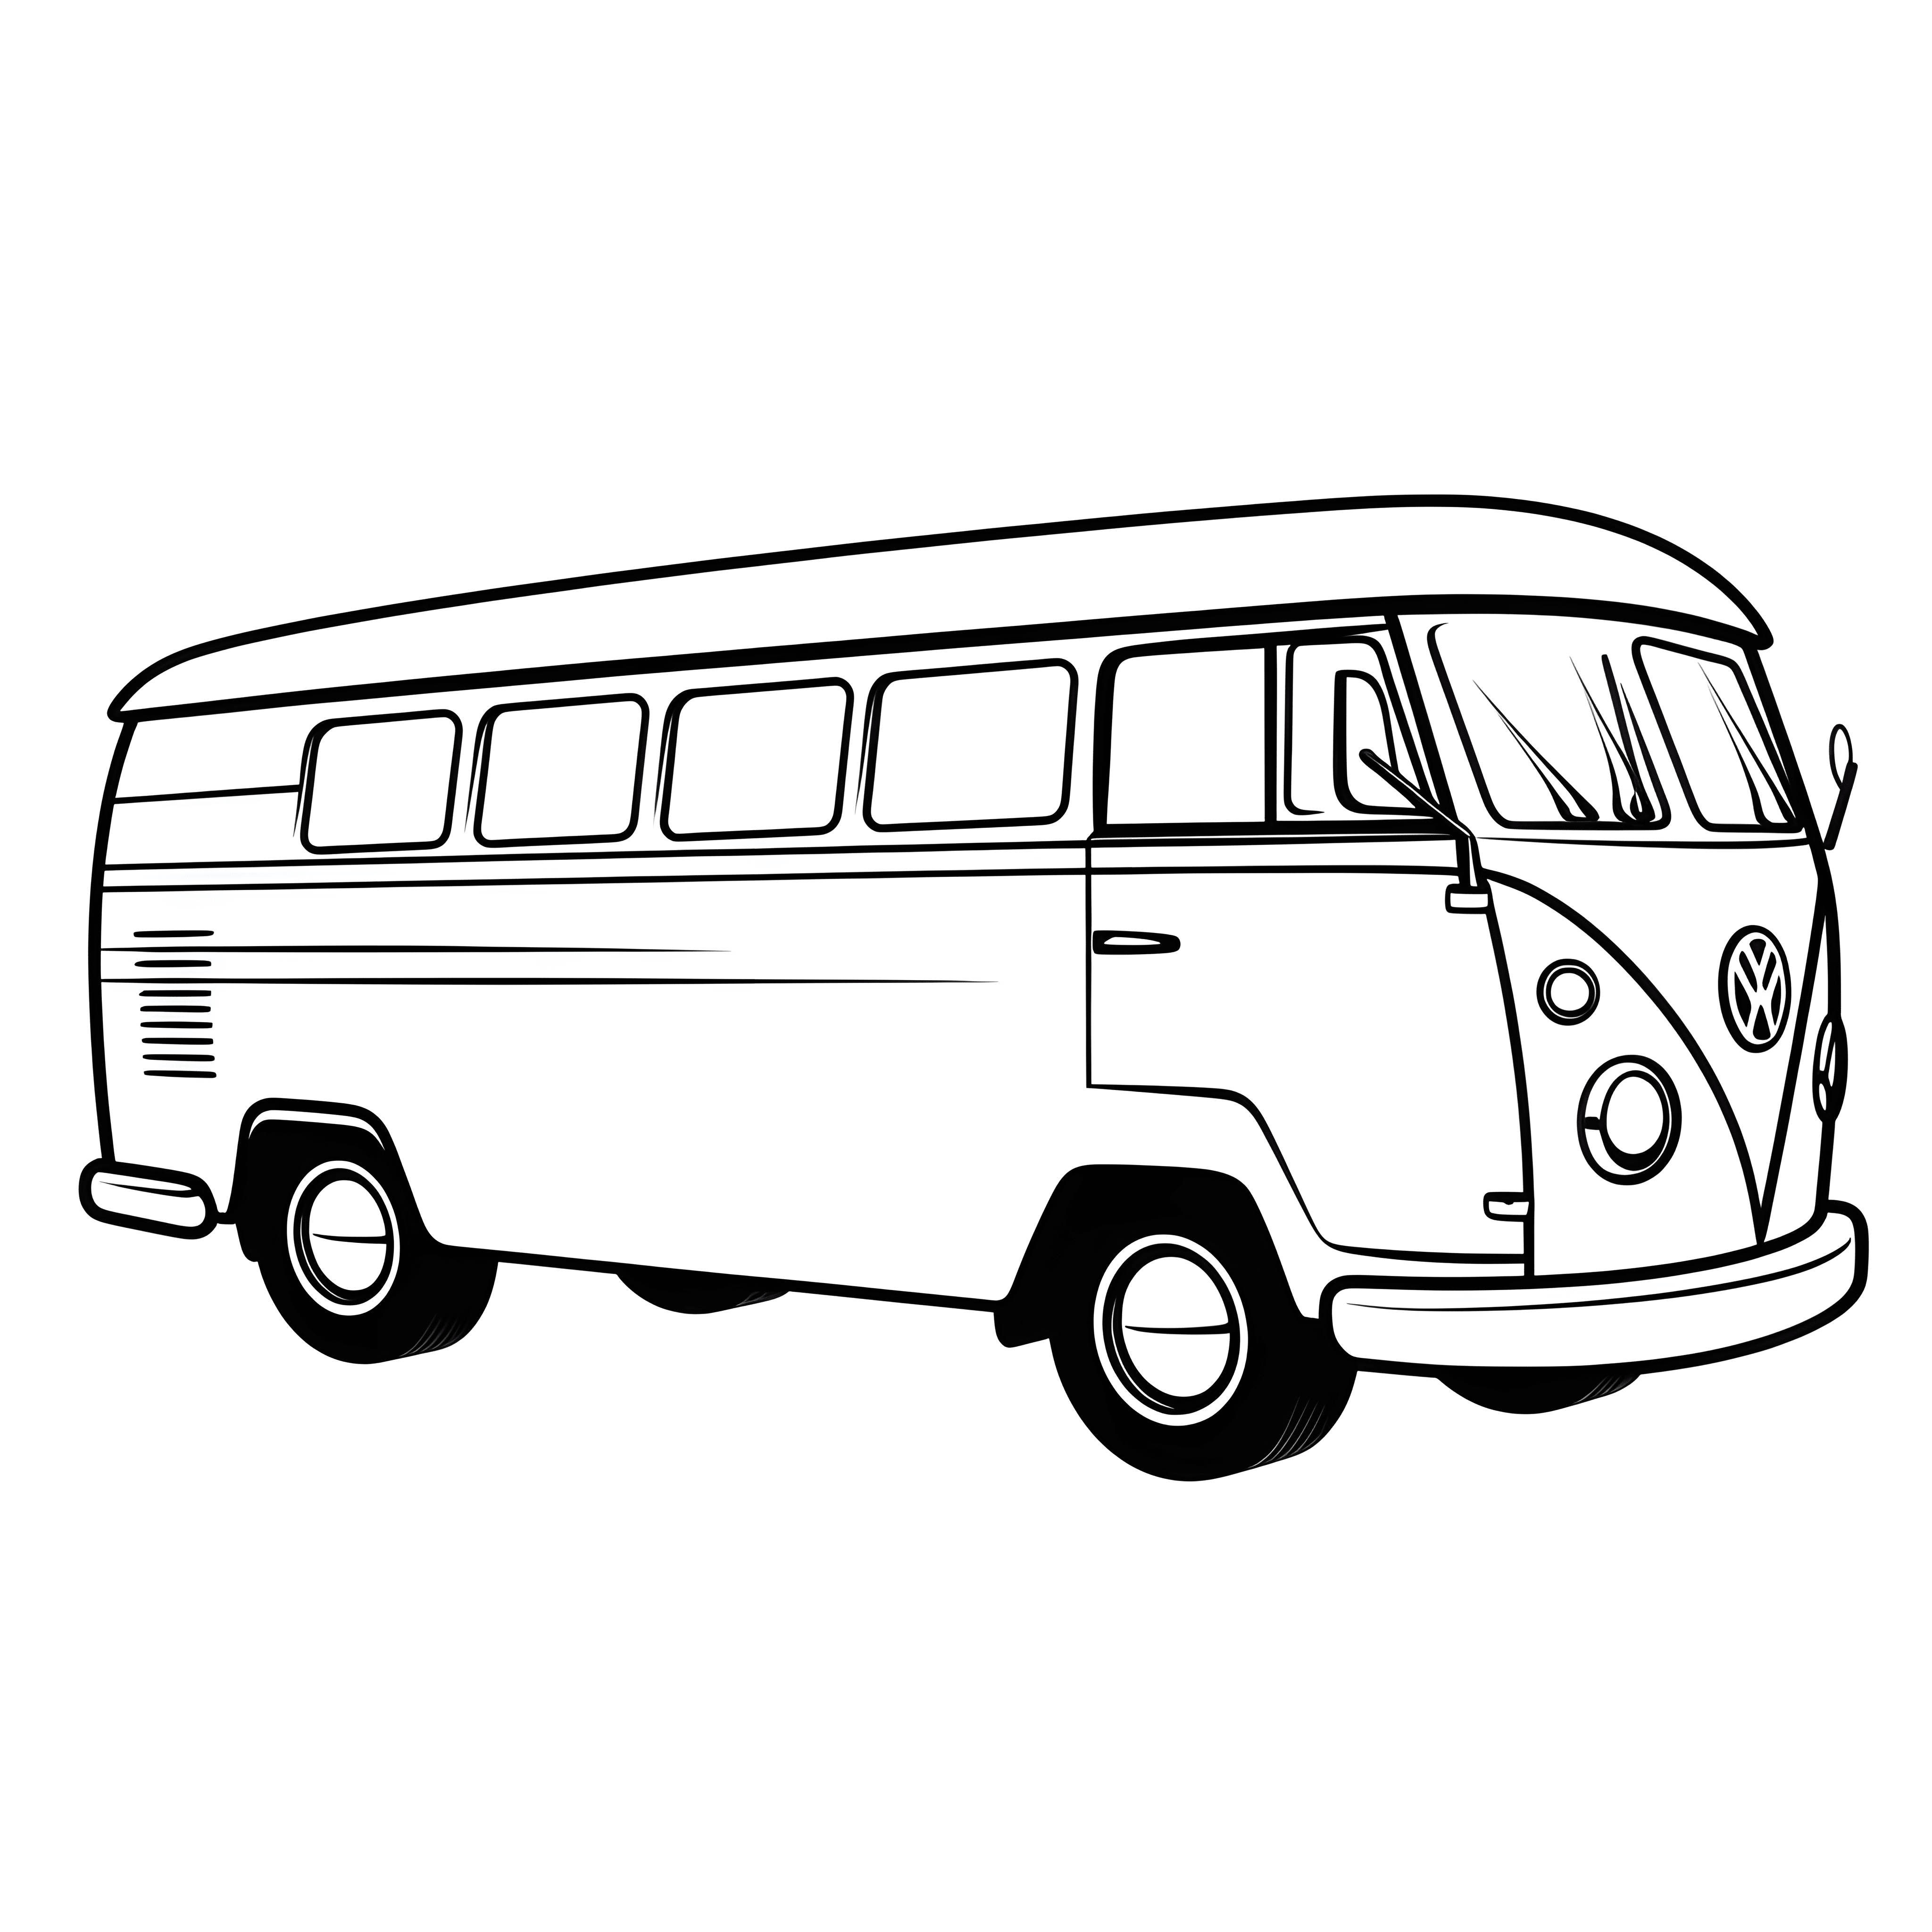 Ein Bus auf der Straße